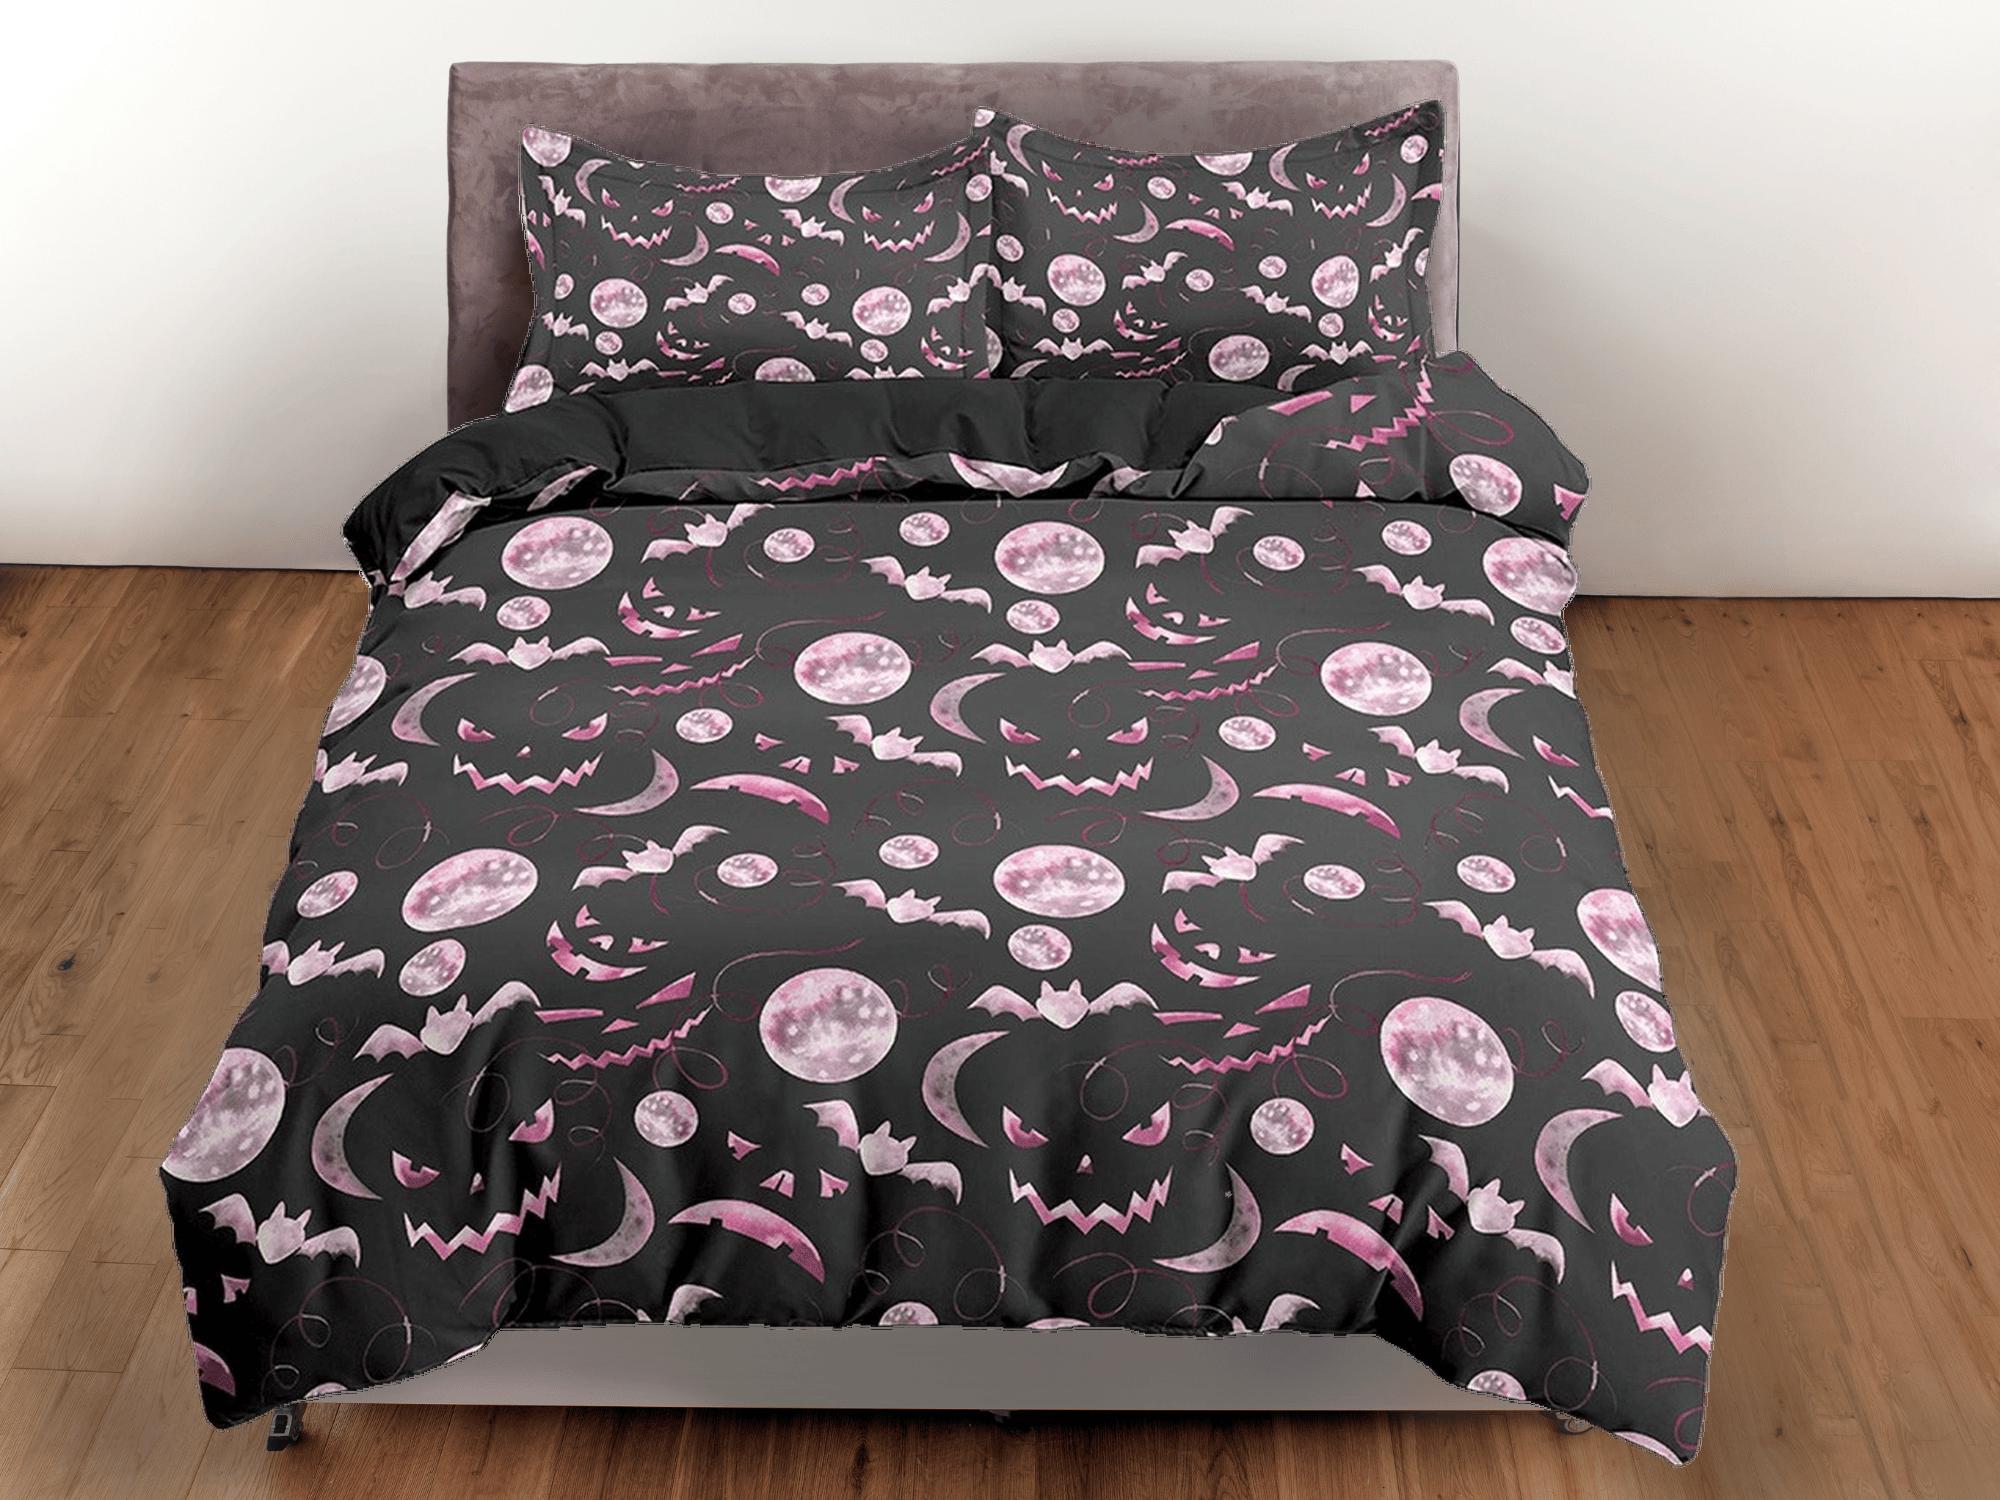 daintyduvet Pumpkin faces and bats pink halloween bedding & pillowcase, black duvet cover set dorm bedding, halloween gift, nursery toddler bedding